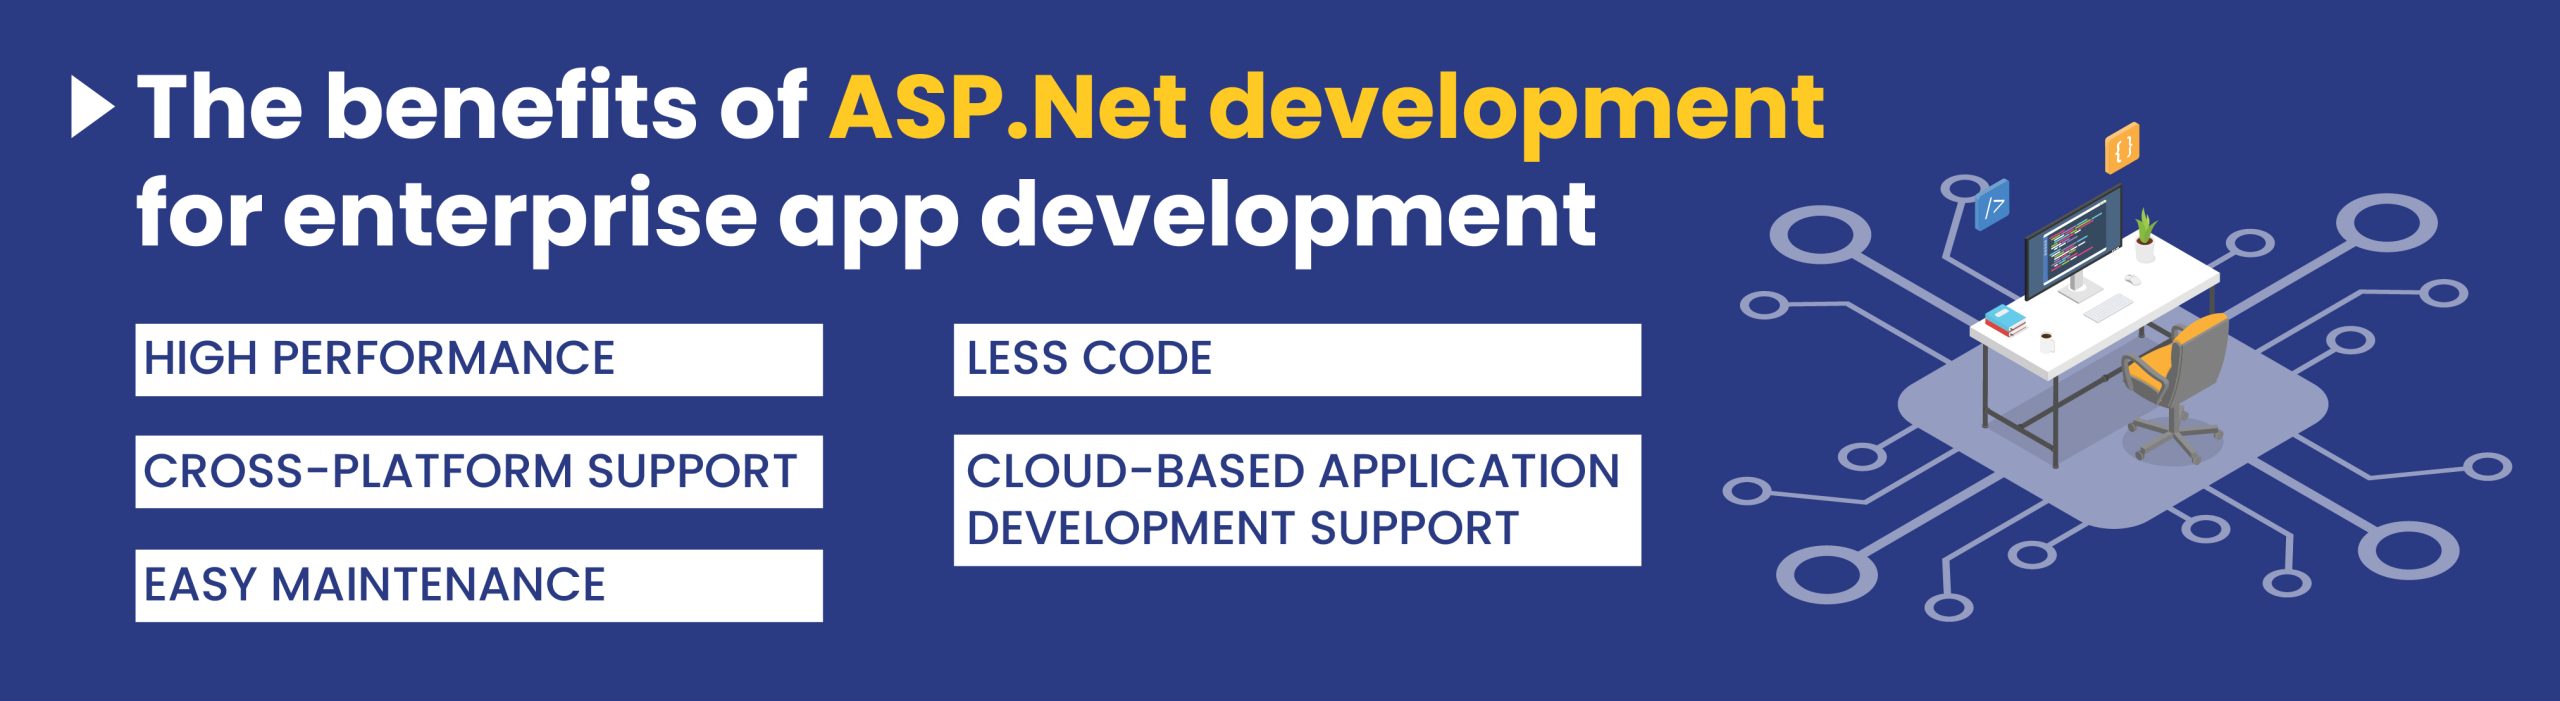 benefits of asp.net development